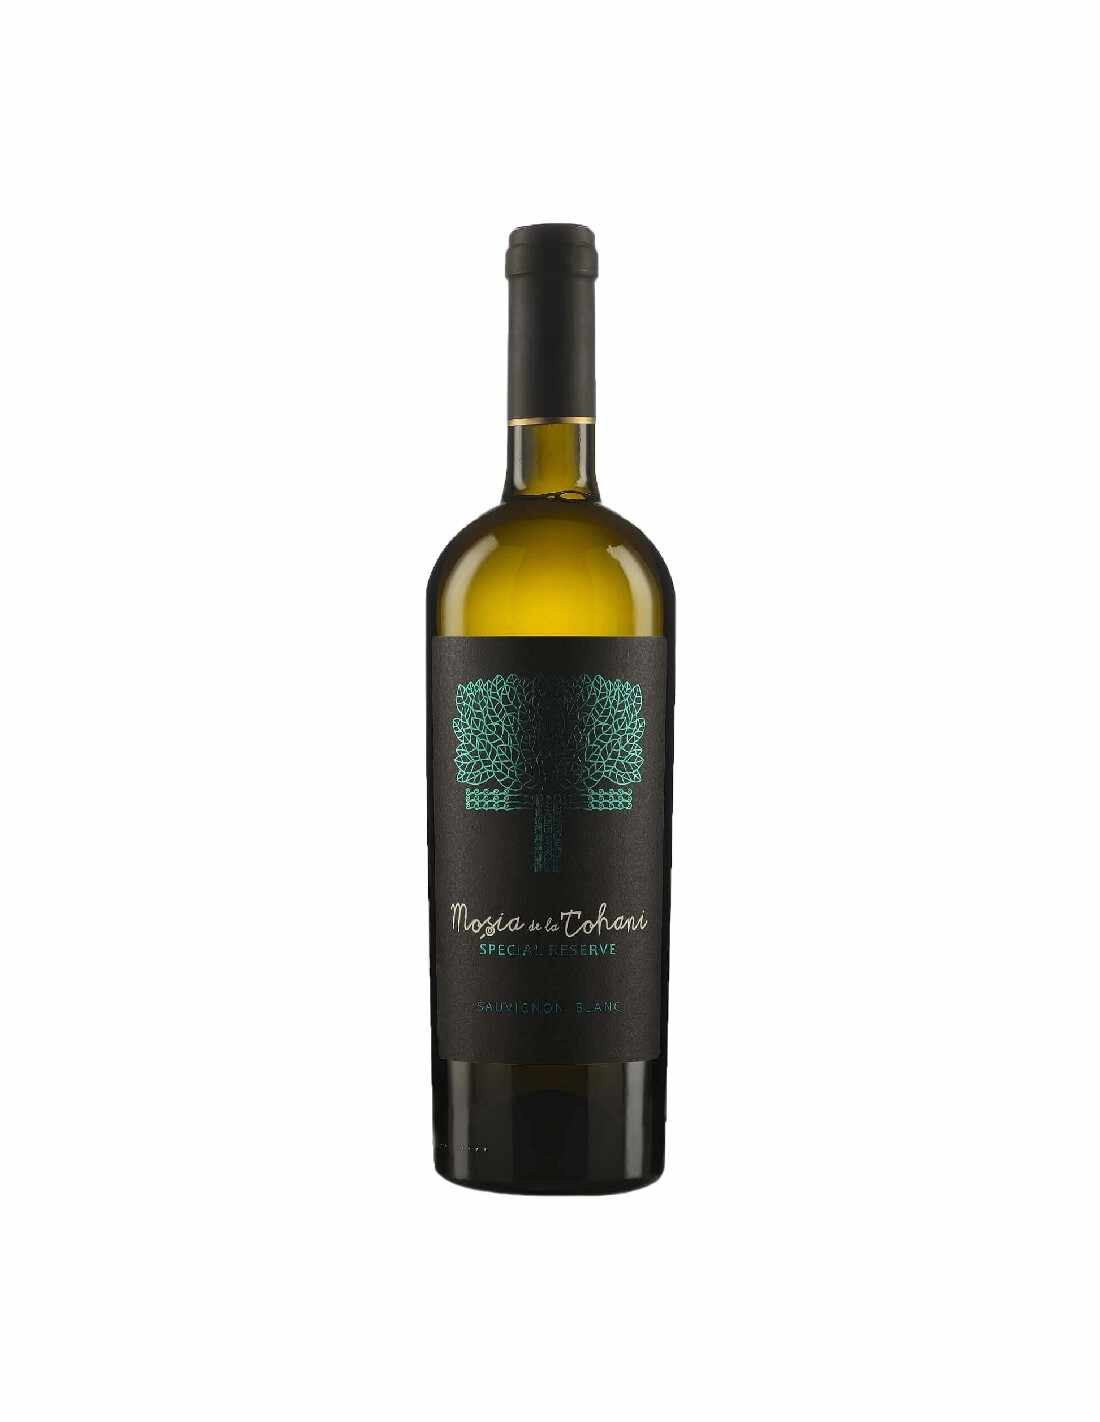 Vin alb sec, Sauvignon Blanc, Mosia Tohani Special Reserve, 0.75L, 13.5% alc., Romania